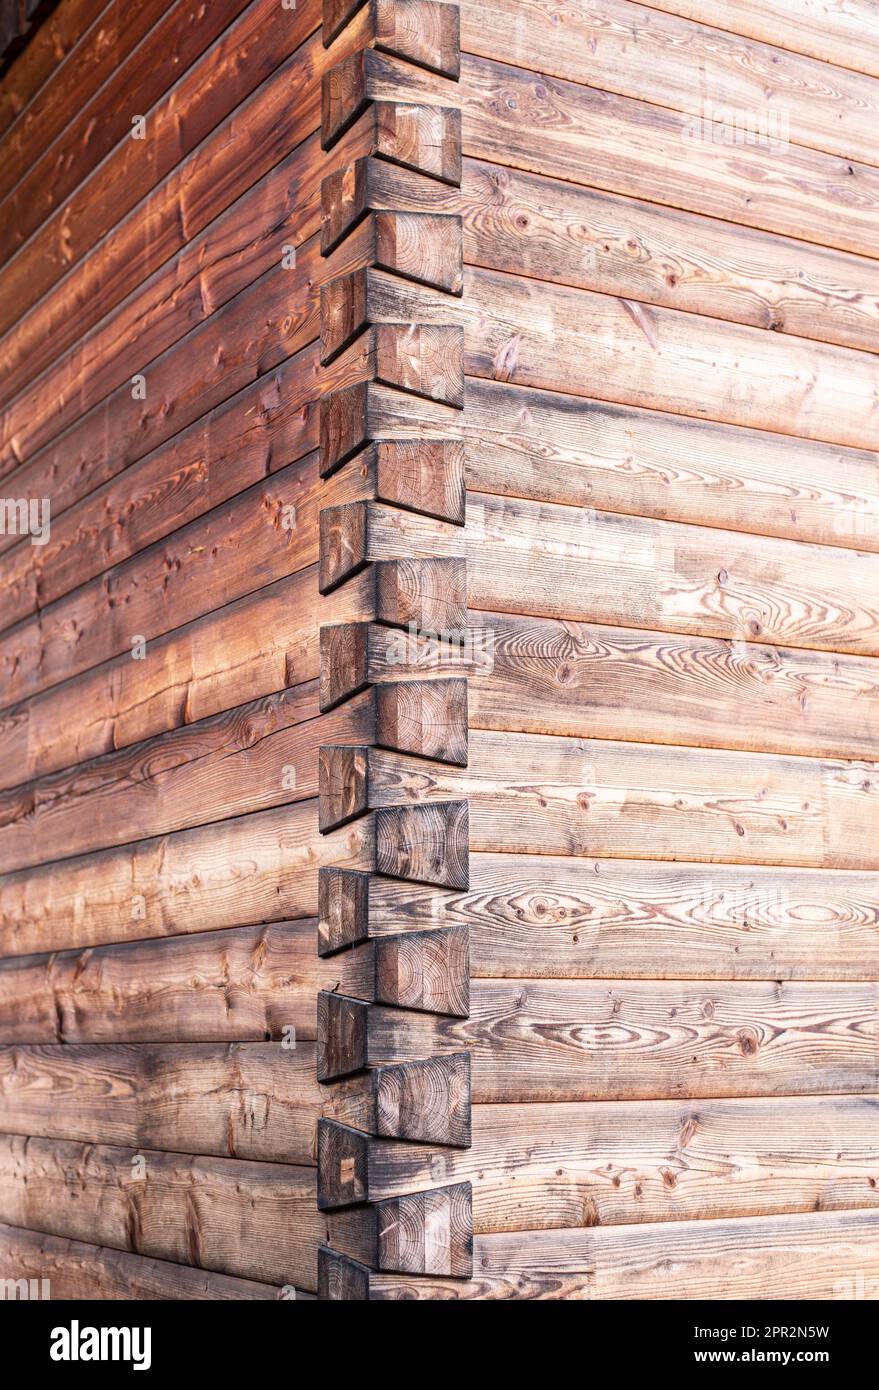 detalle de la fachada de un edificio de madera con carpintería tradicional de cola de golondrina en la esquina Foto de stock